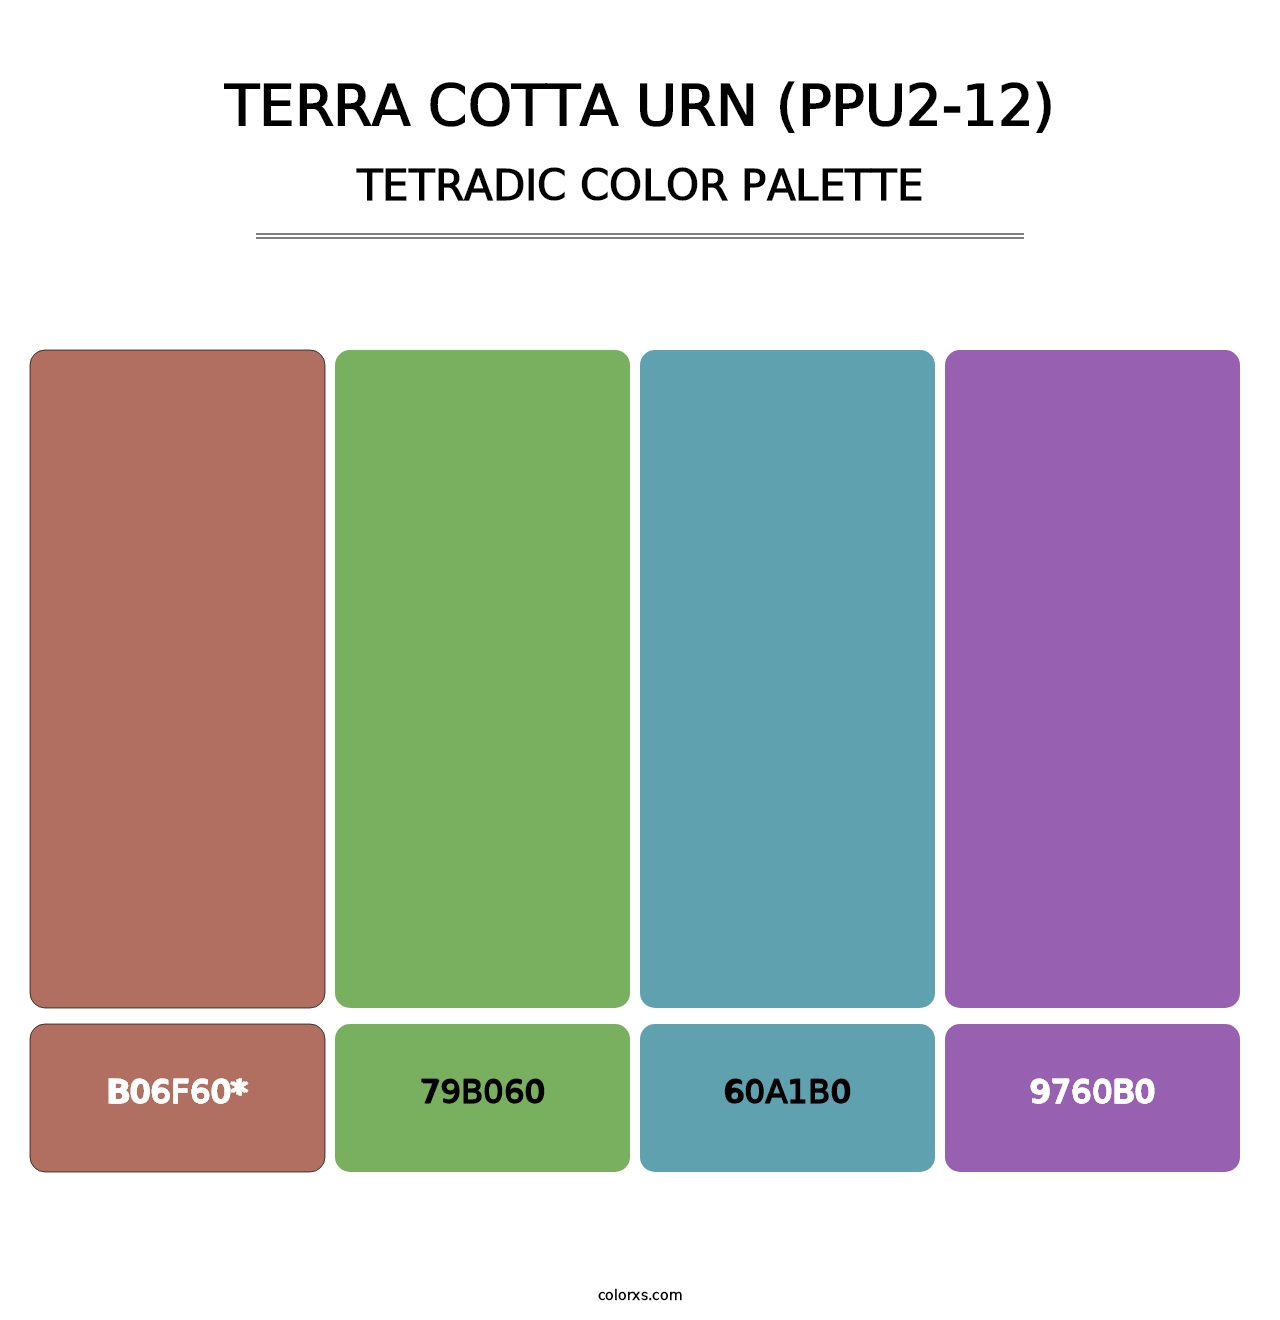 Terra Cotta Urn (PPU2-12) - Tetradic Color Palette